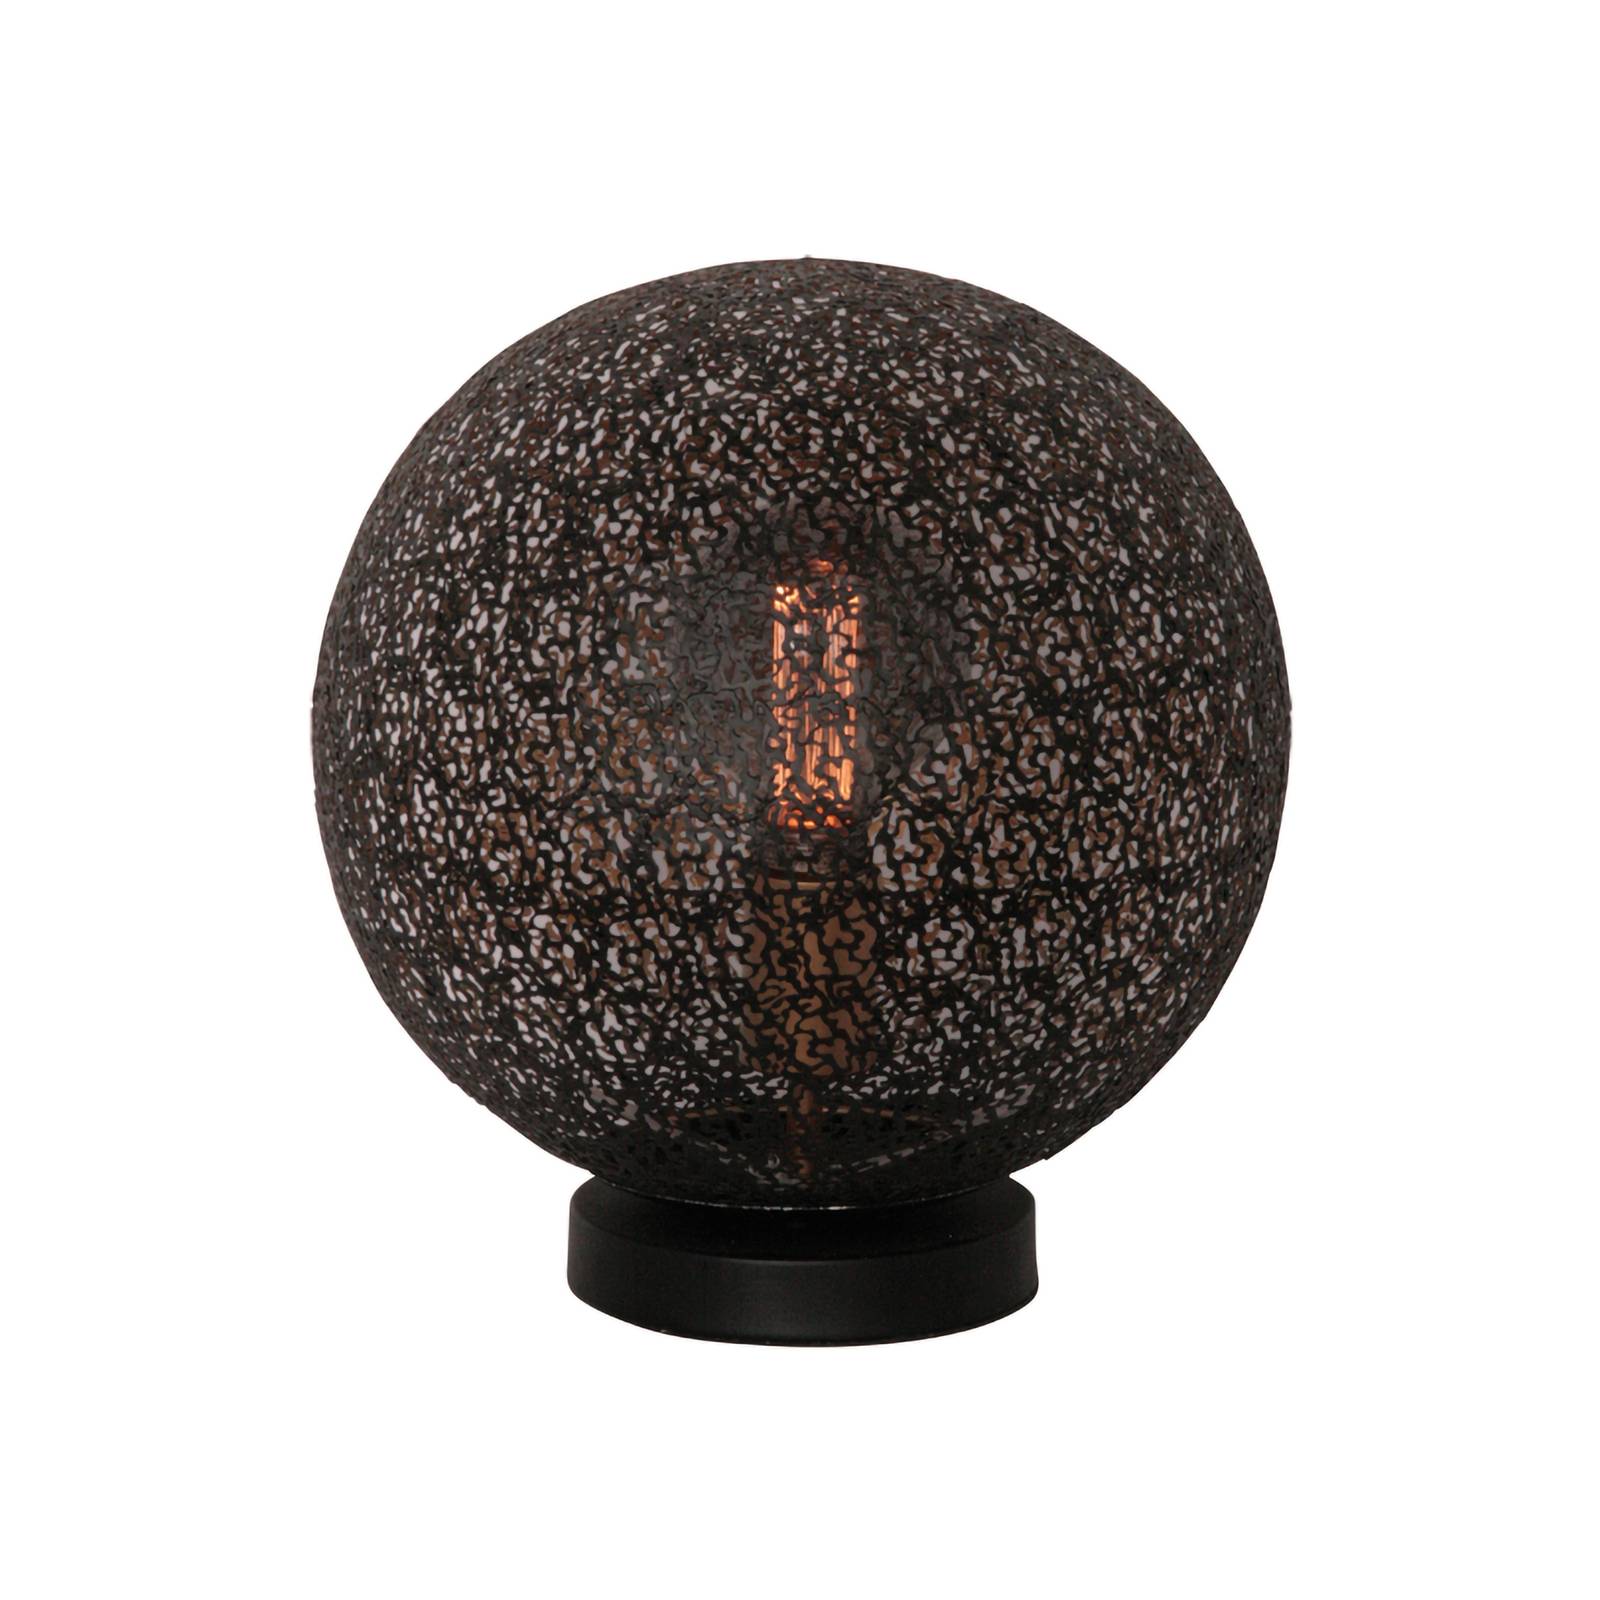 Freelight oronero asztali lámpa, ø 30 cm, fekete/arany színű, fém